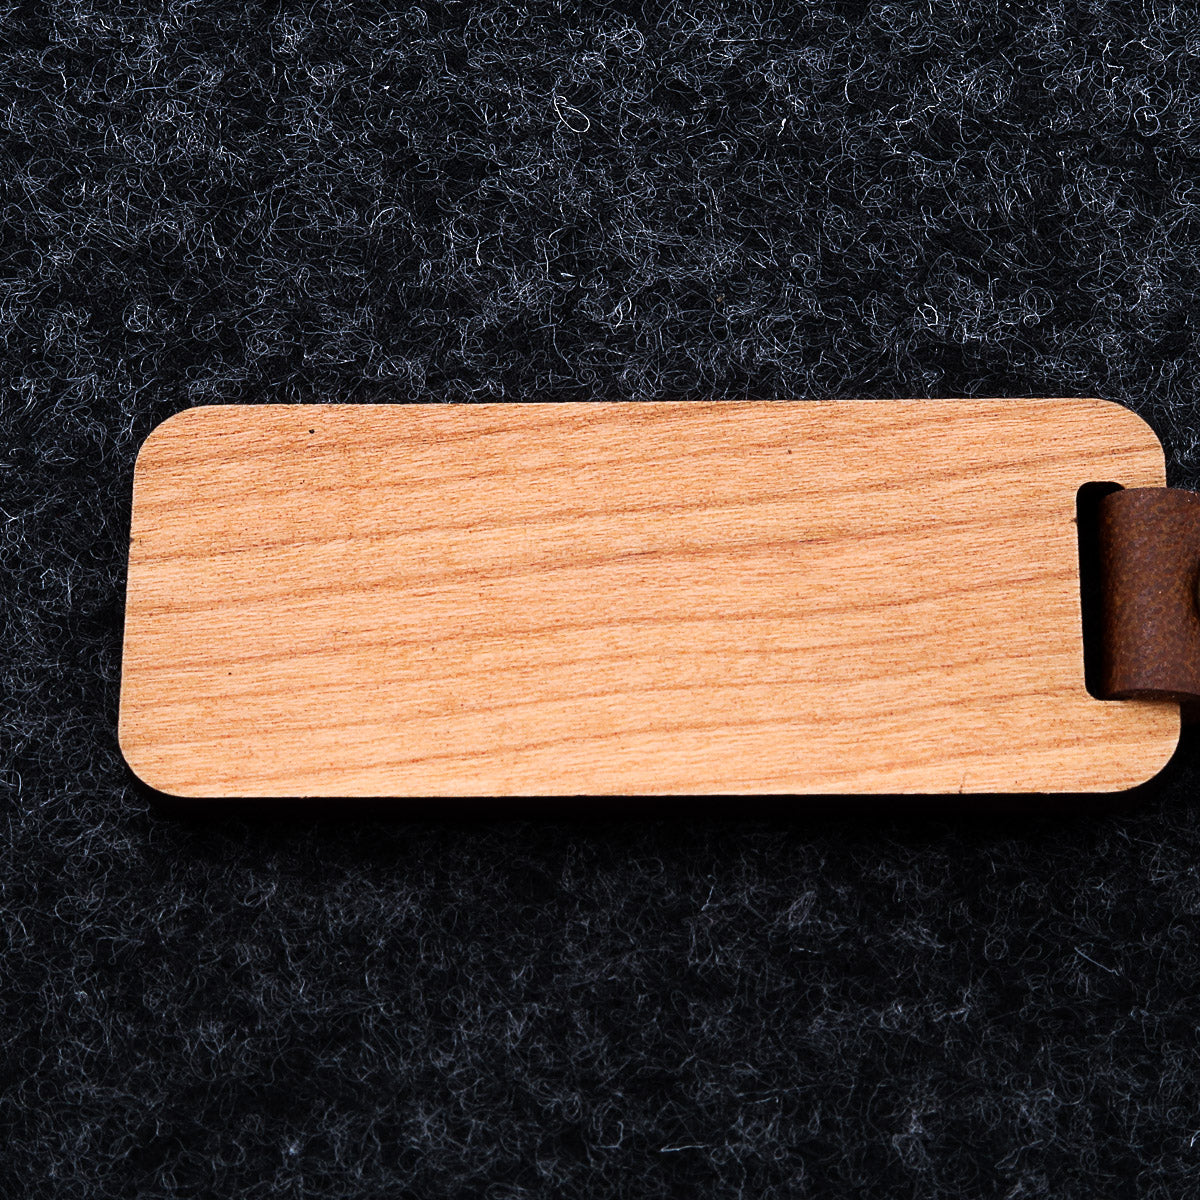 Personalisierte eingraviert Holz Bar Schlüsselanhänger für neue